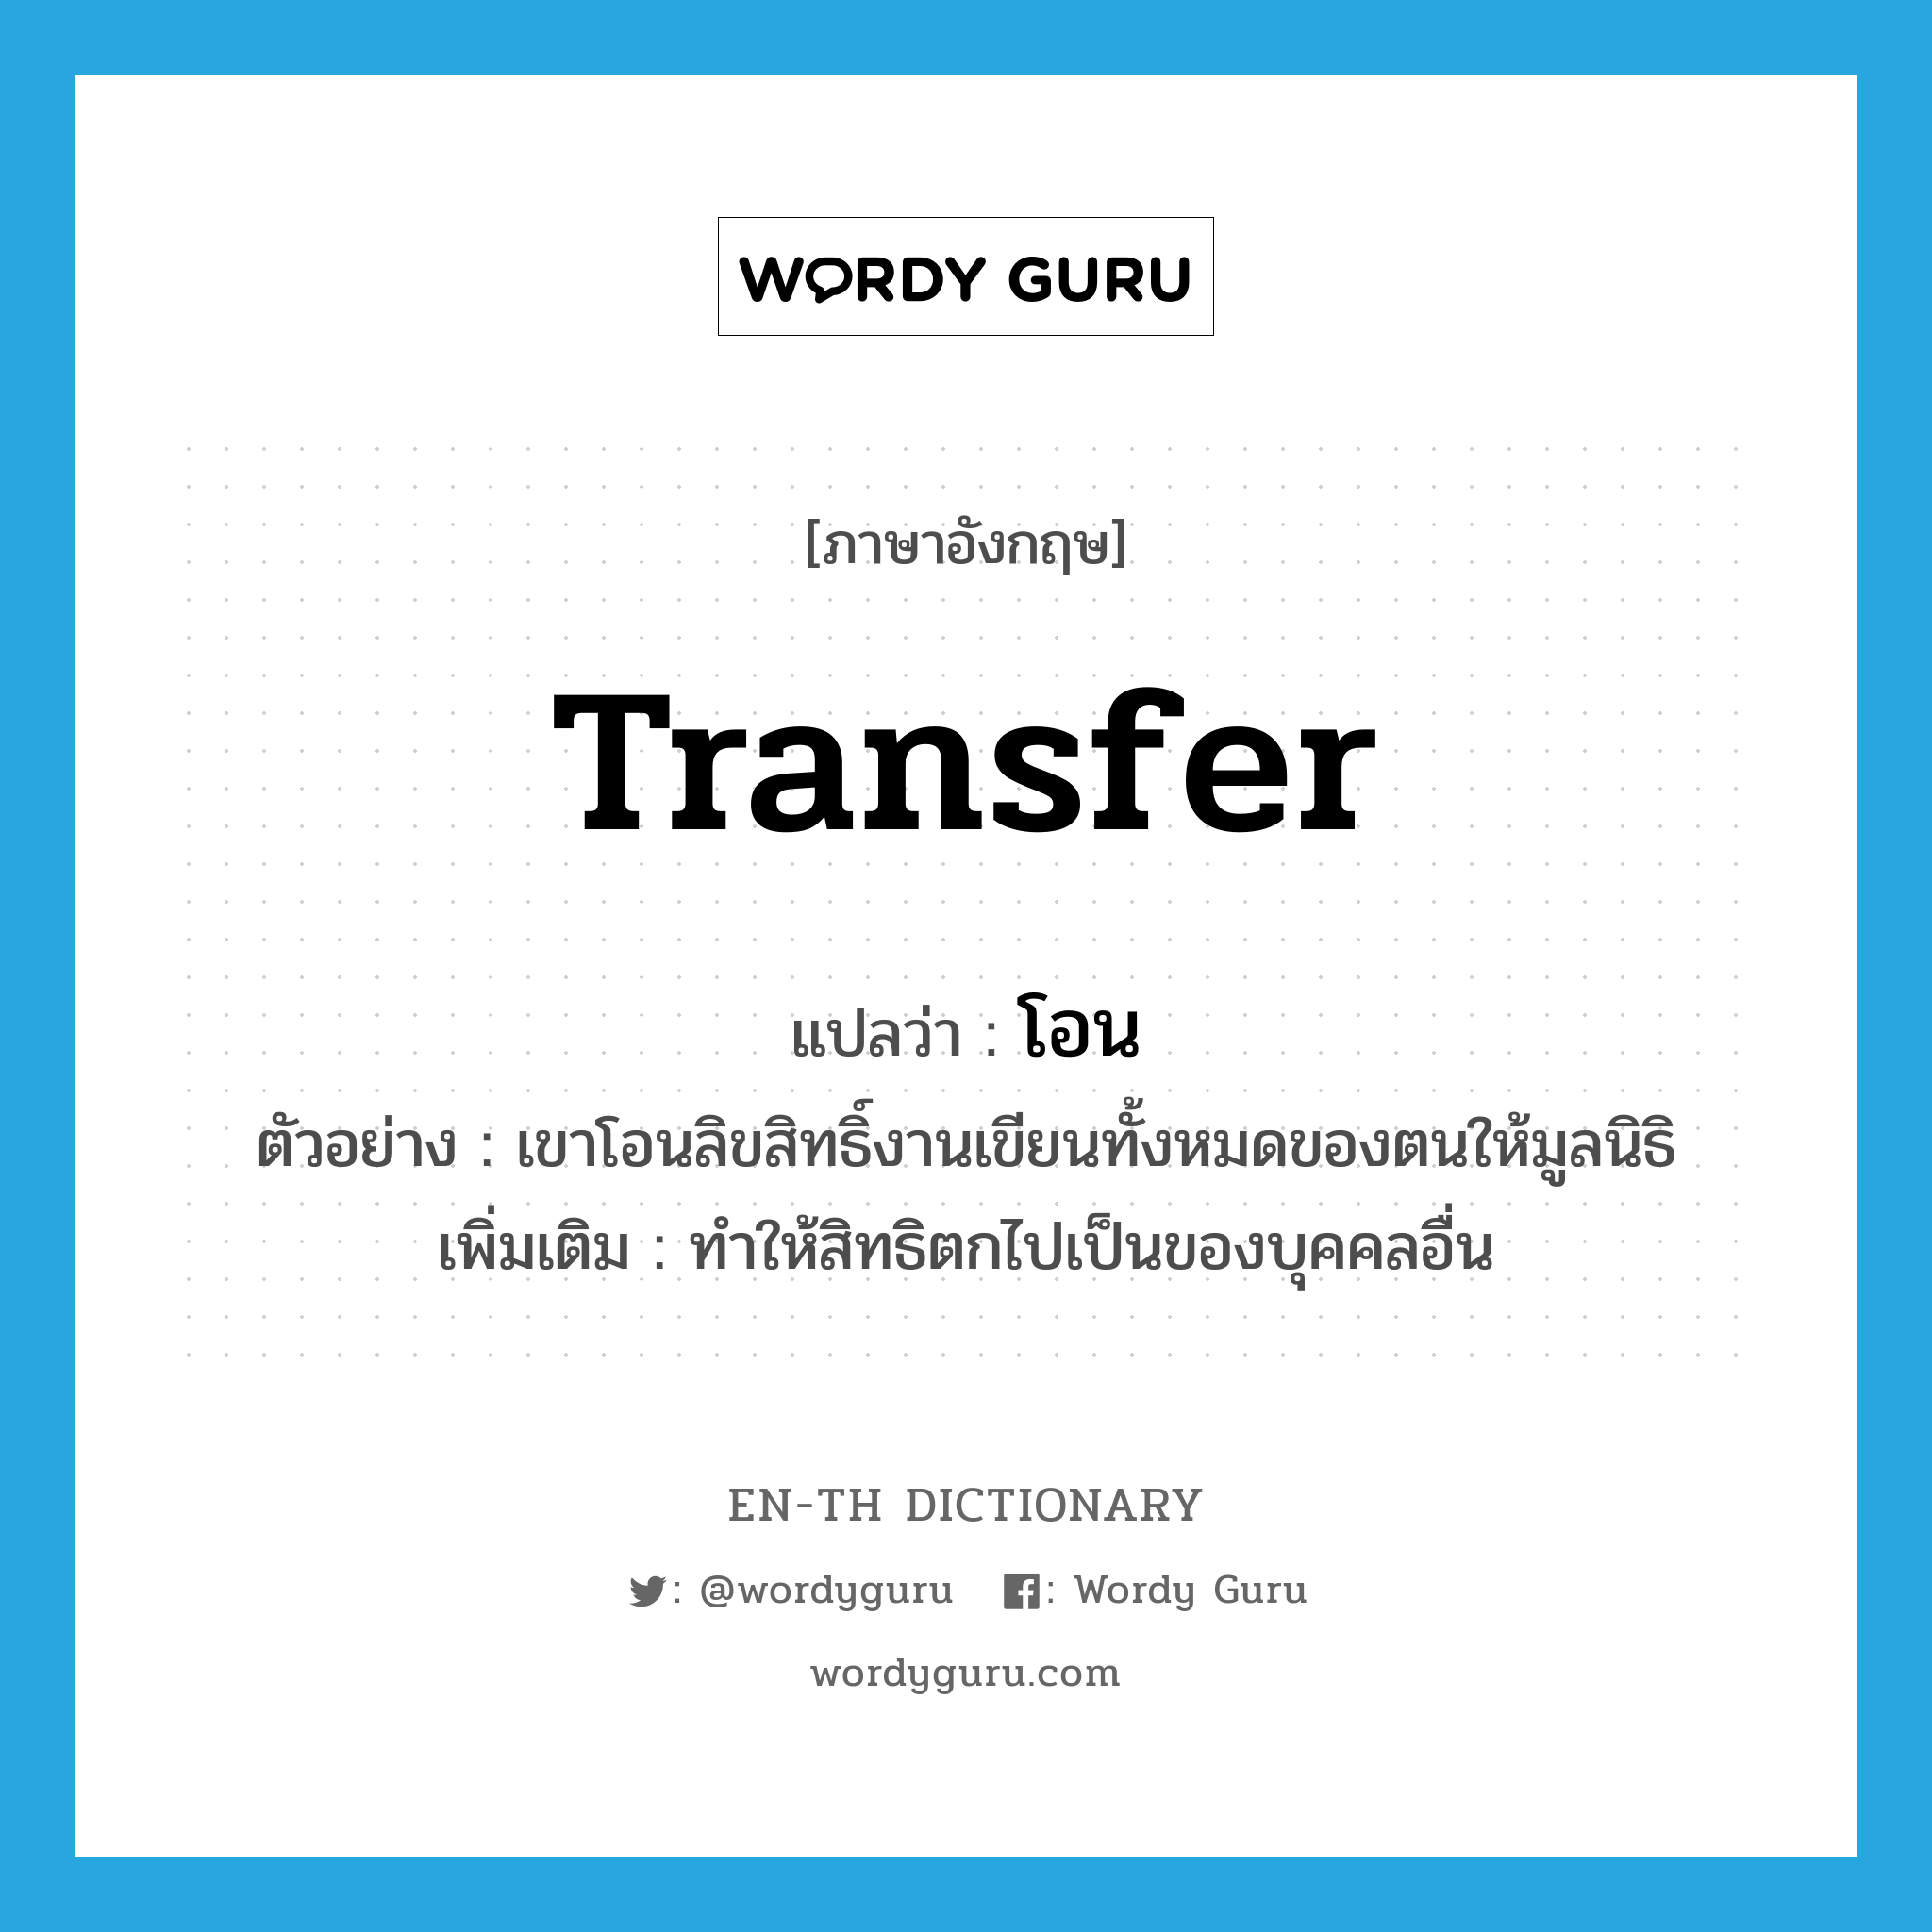 transfer แปลว่า?, คำศัพท์ภาษาอังกฤษ transfer แปลว่า โอน ประเภท V ตัวอย่าง เขาโอนลิขสิทธิ์งานเขียนทั้งหมดของตนให้มูลนิธิ เพิ่มเติม ทำให้สิทธิตกไปเป็นของบุคคลอื่น หมวด V